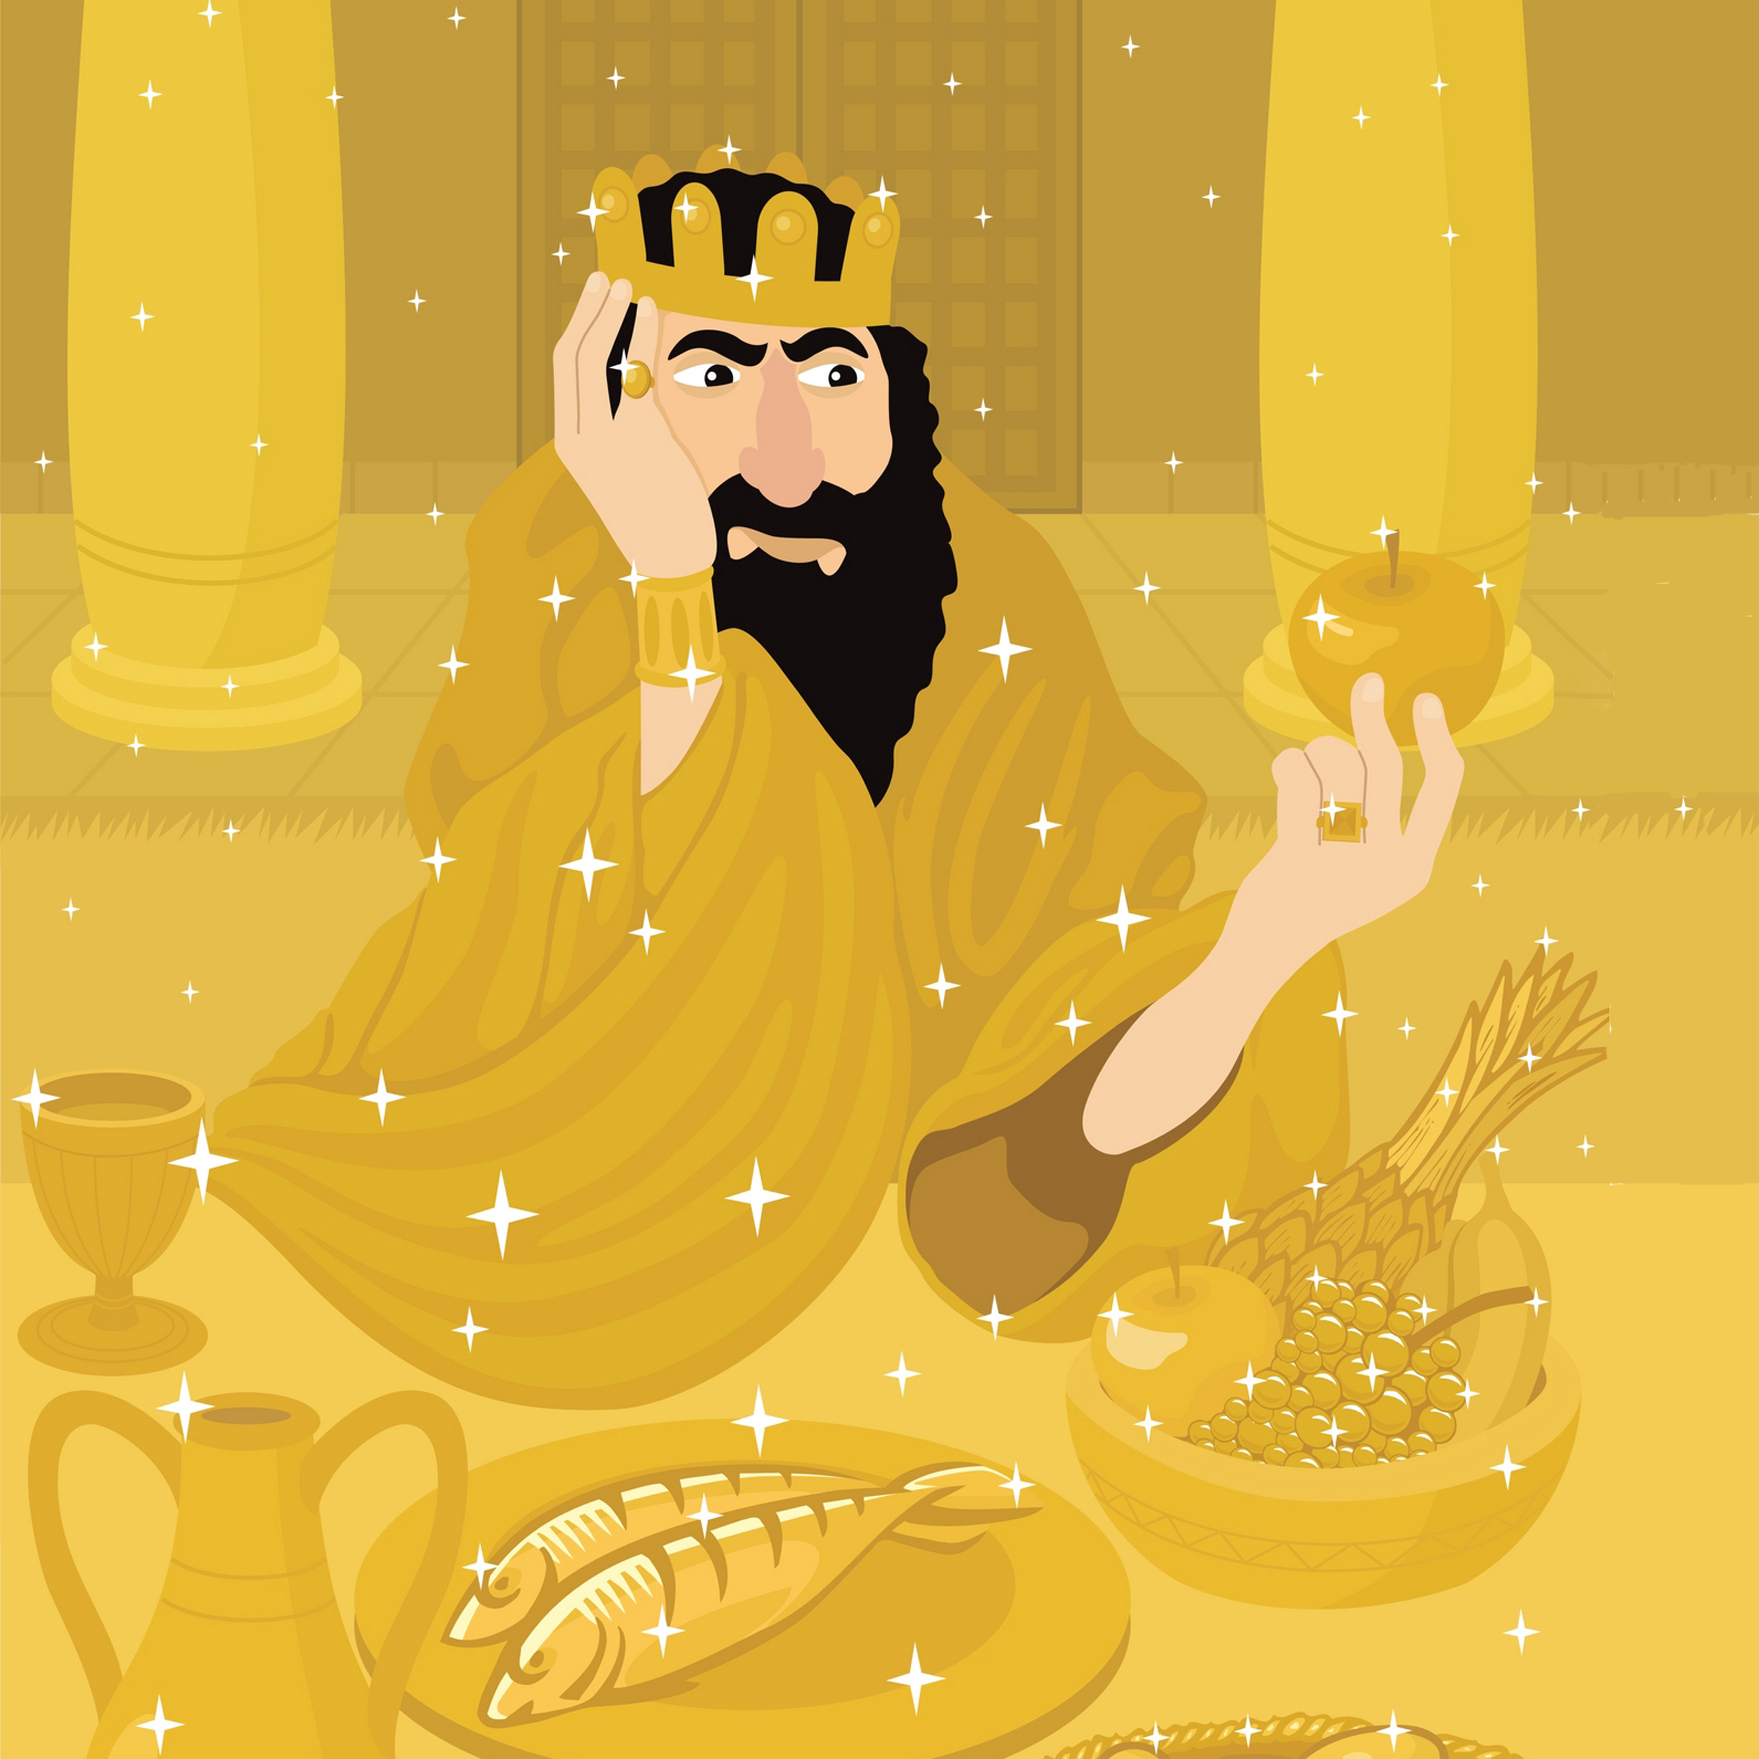 King Midas Gold